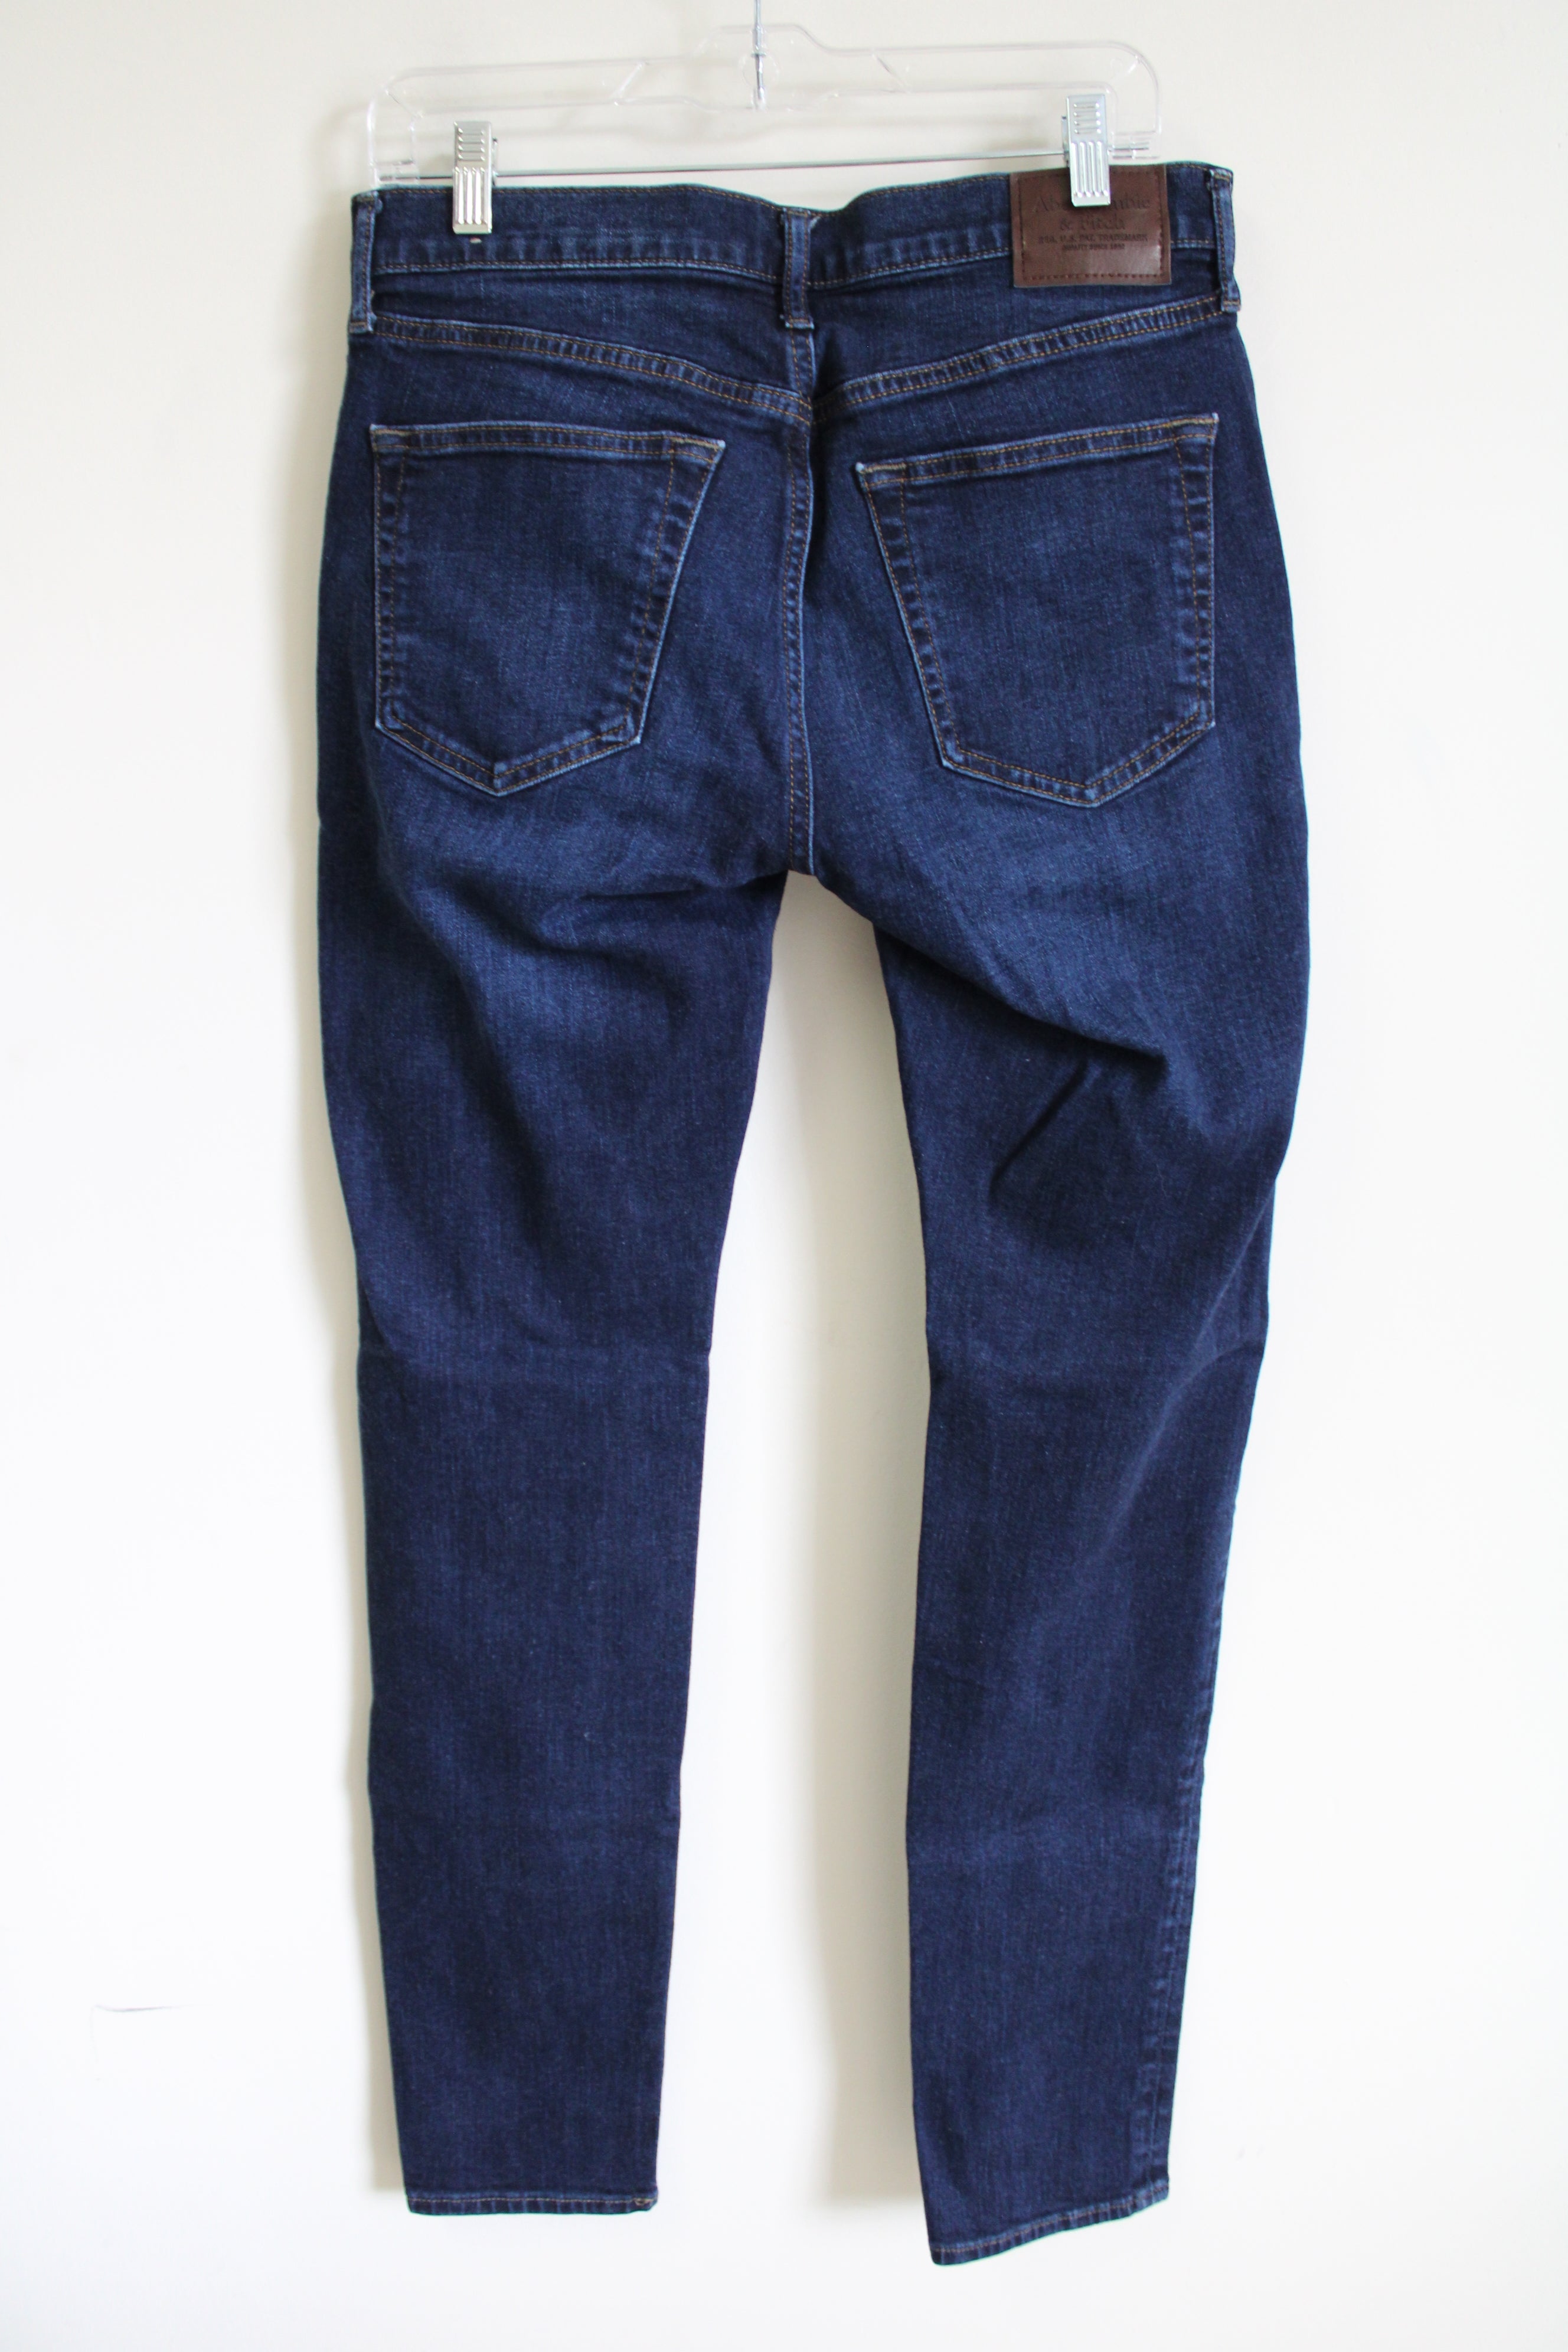 Abercrombie & Fitch Stretch Felix Super Skinny Dark Wash Jeans | 31X34